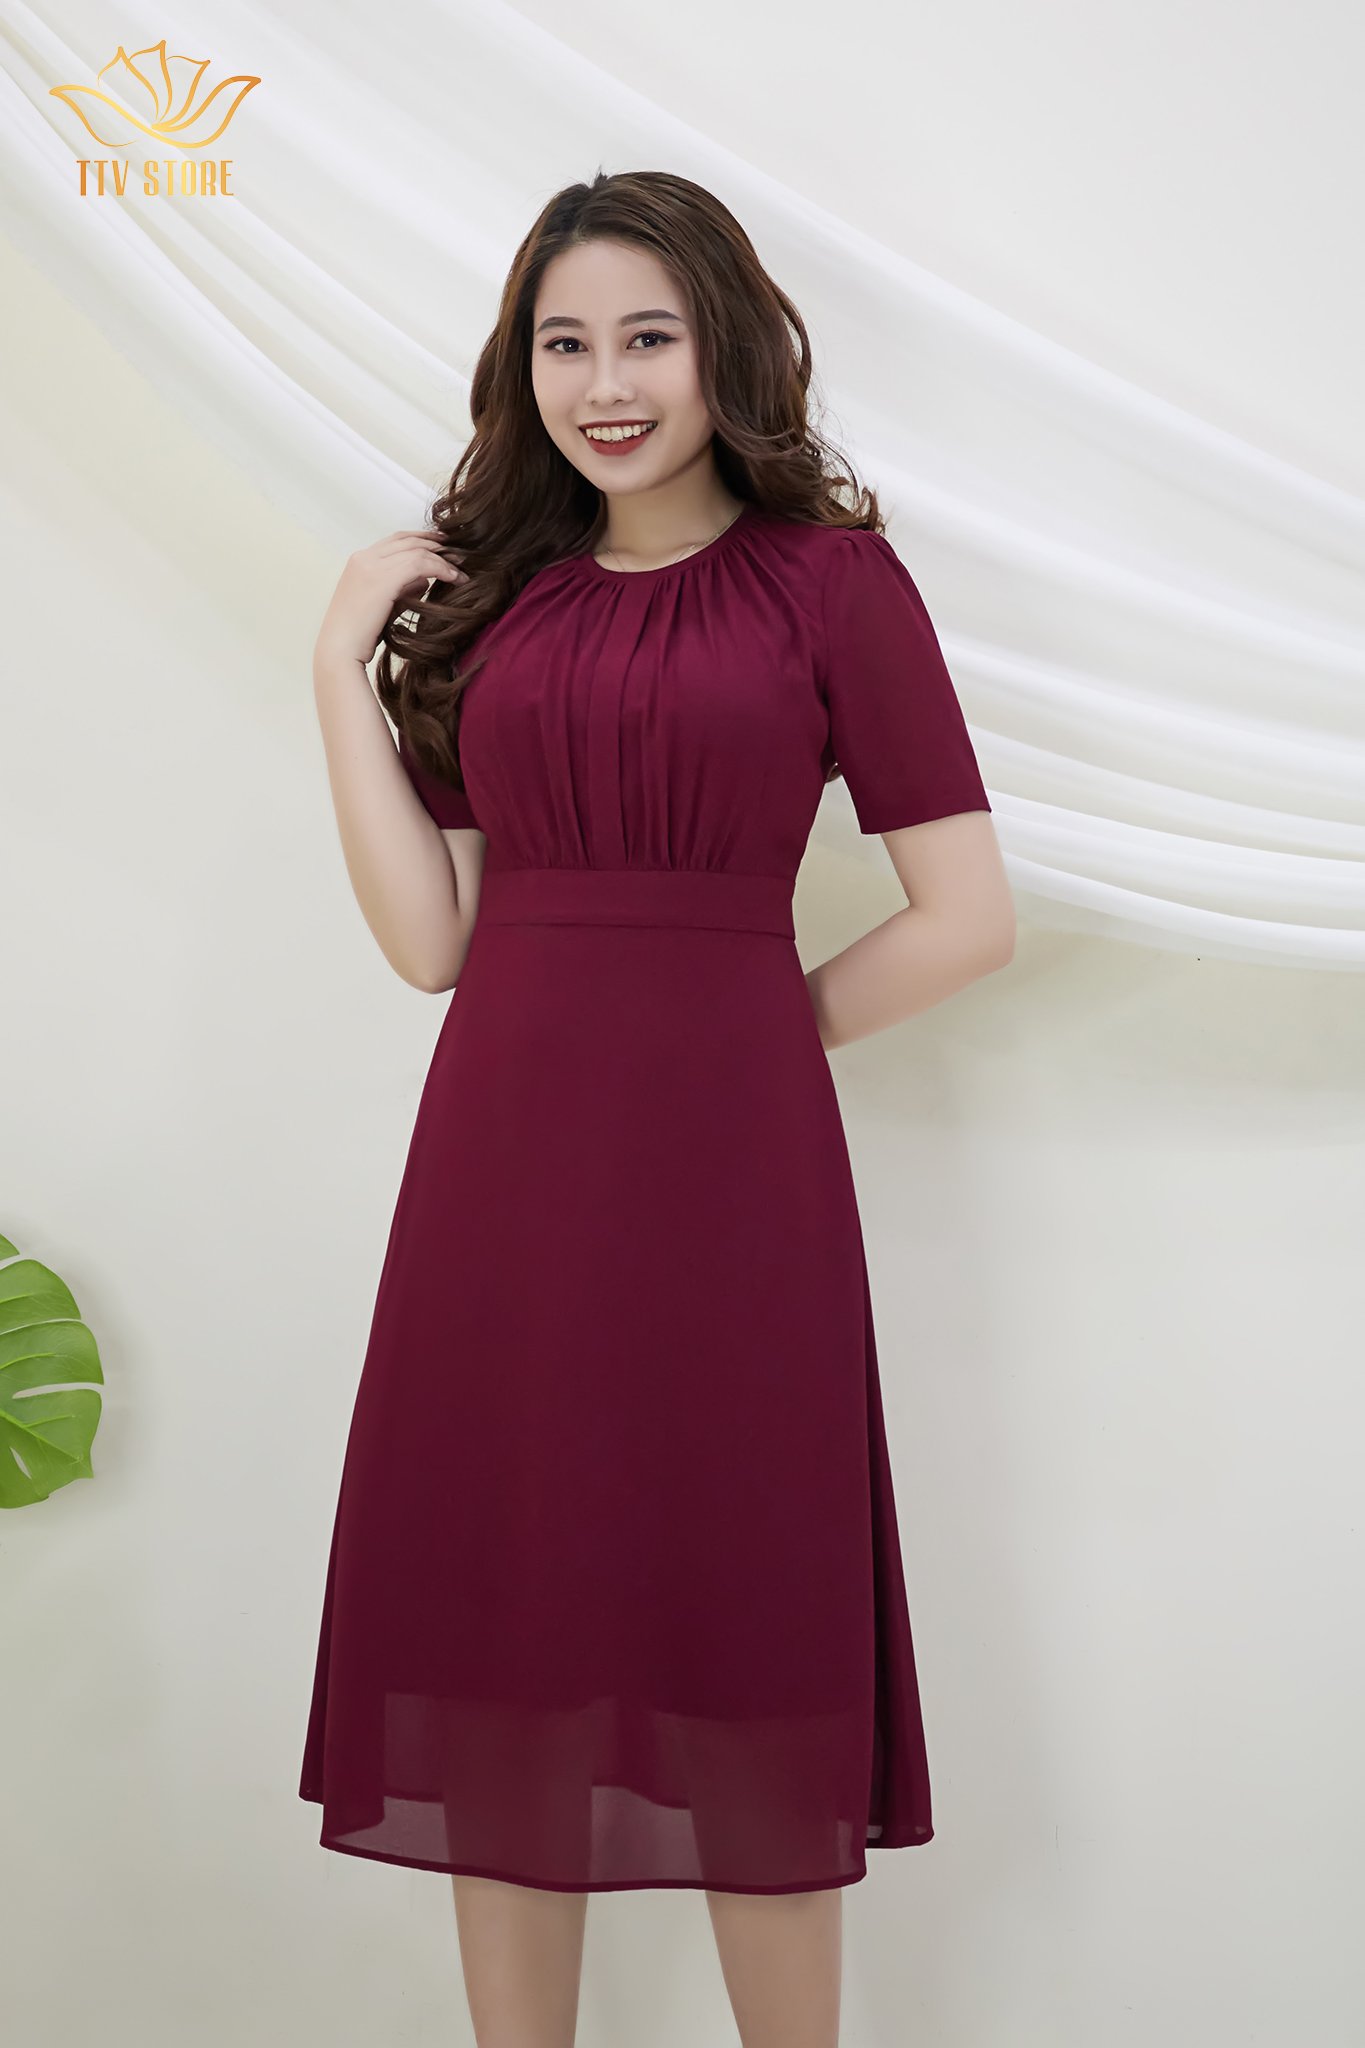 Đầm Thiết kế Đầm xòe Đầm thời trang công sở Đầm trung niên thương hiệu TTV383 đỏ mận - đầm from a cổ tròn dập ly CD